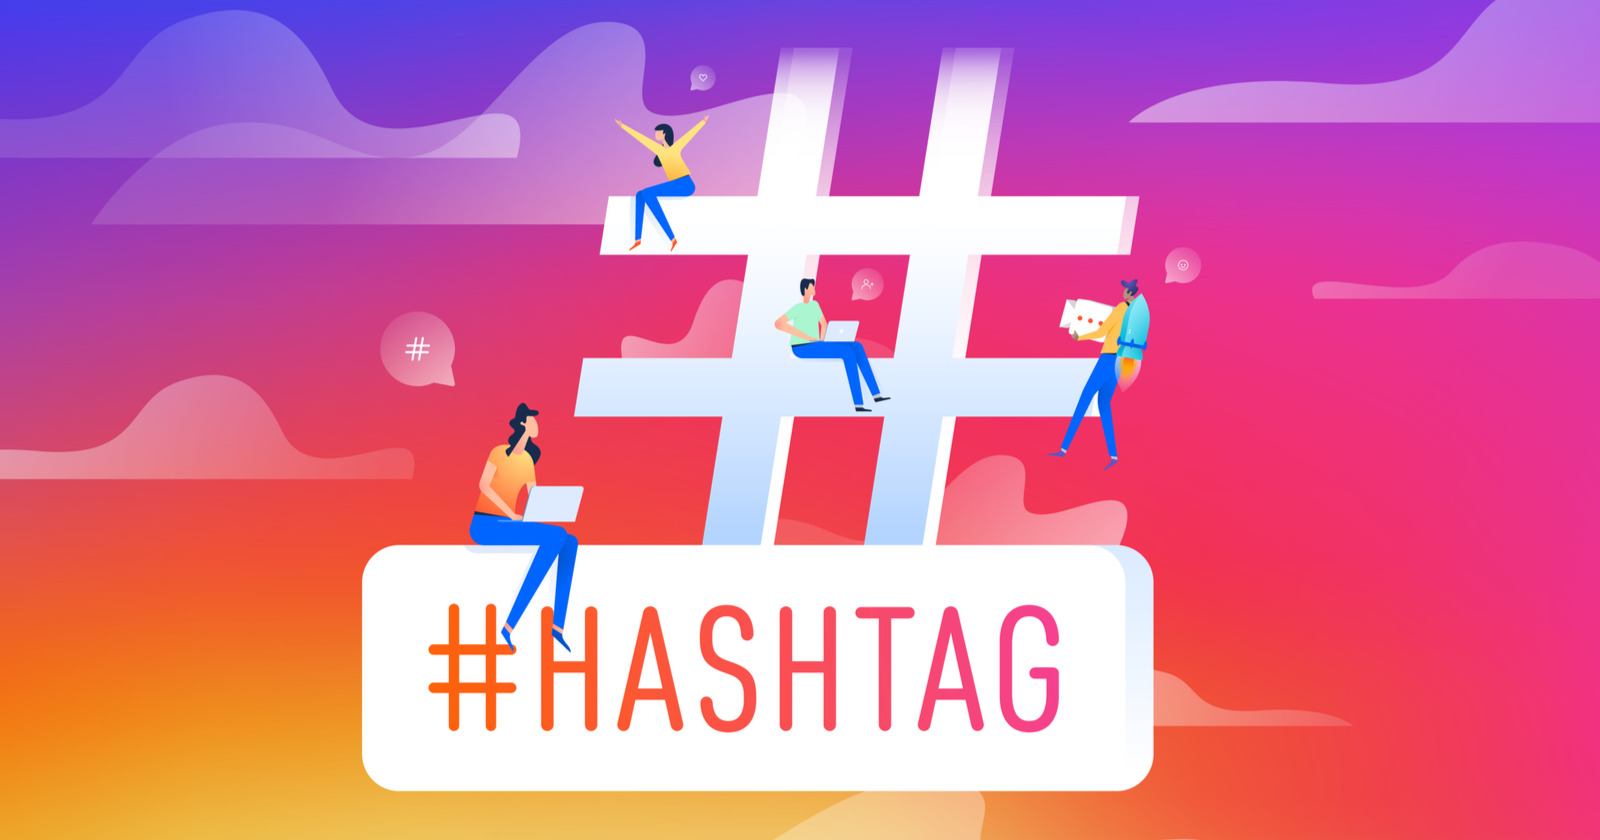 trending Hashtags On Instagram